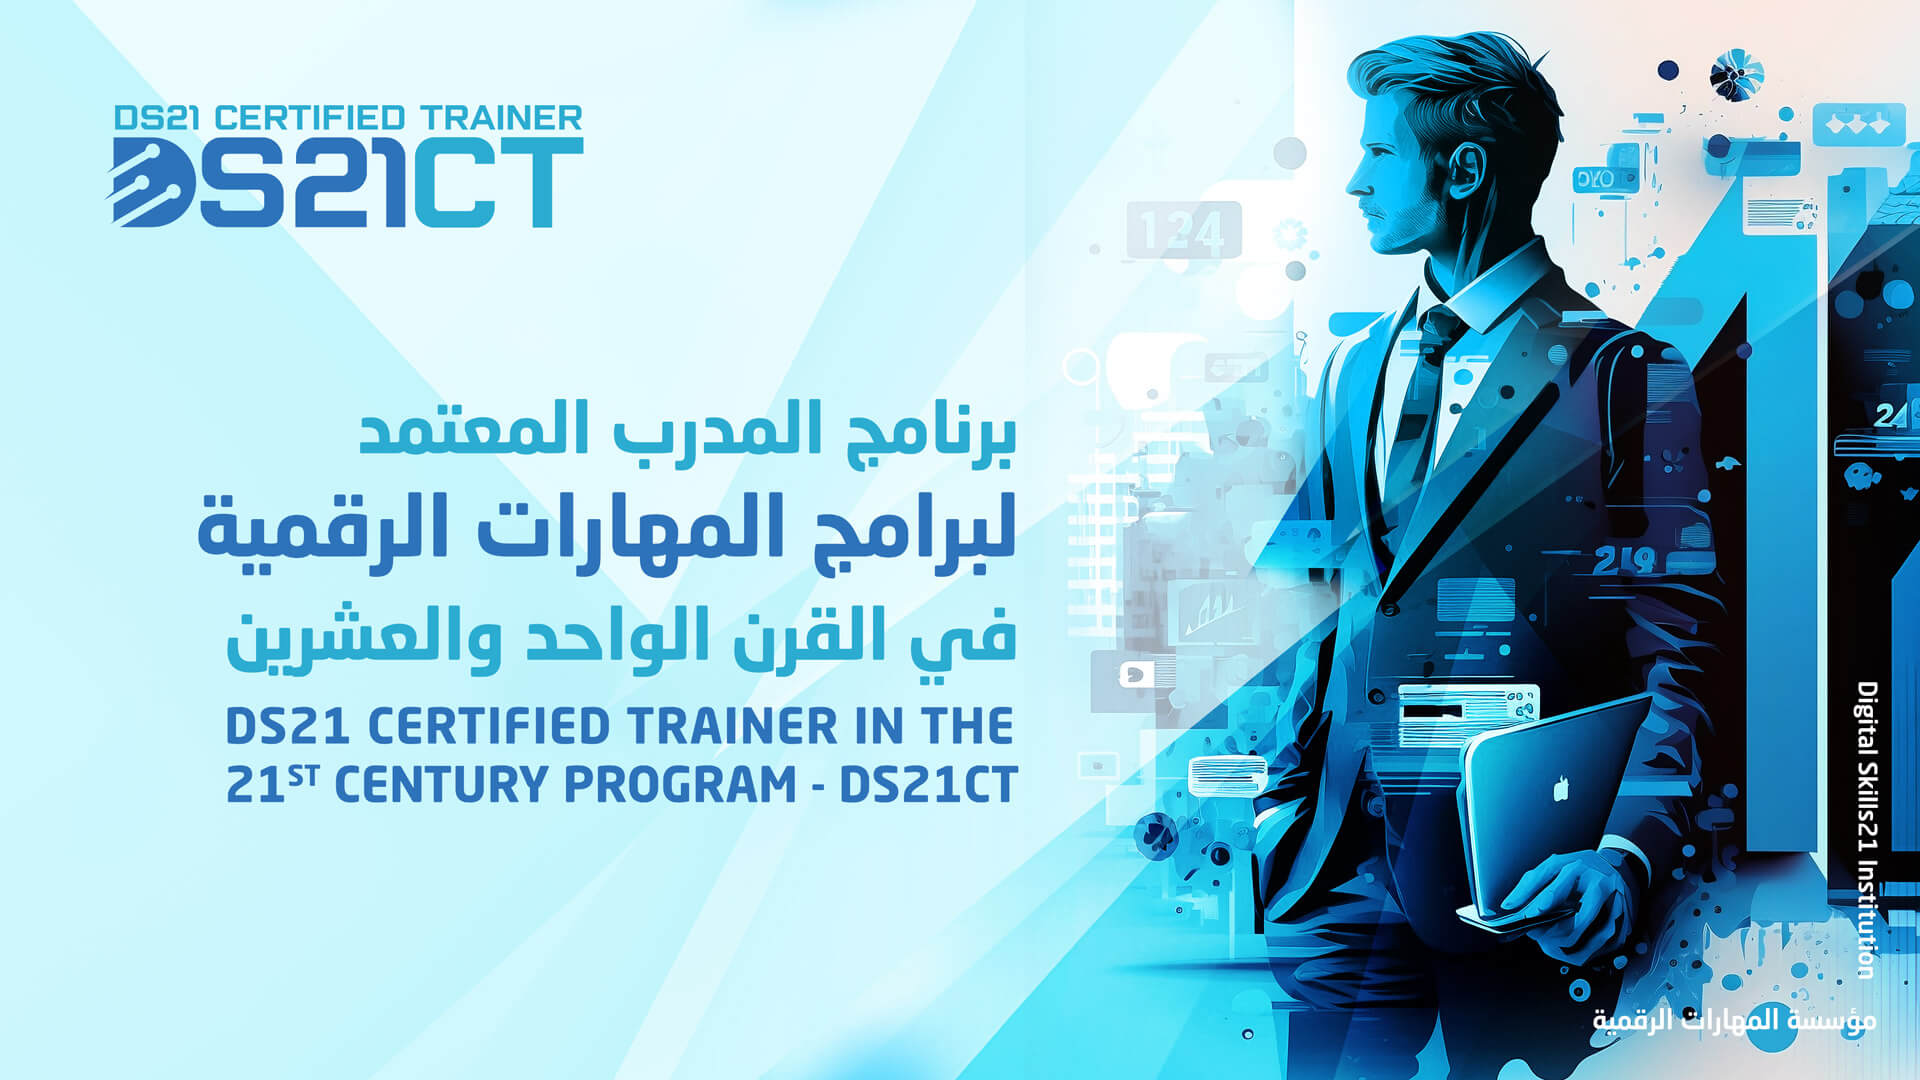 برنامج المدرب المعتمد لبرامج المهارات الرقمية في القرن21 - DS21CT